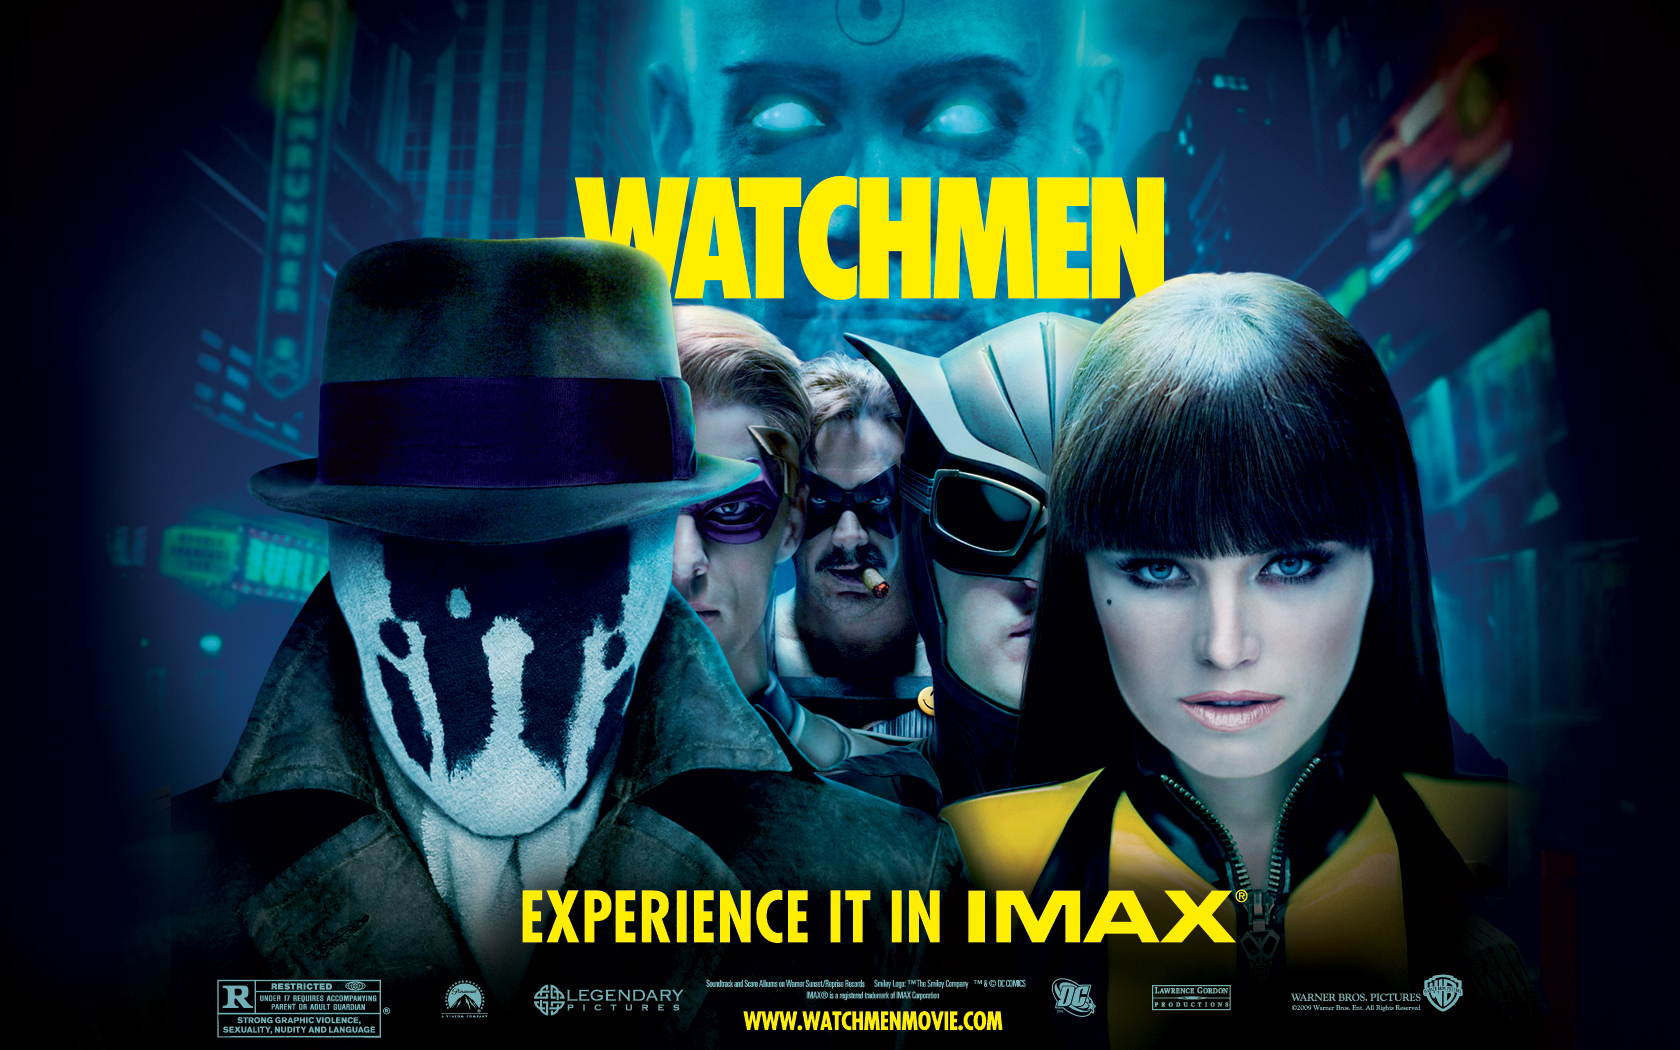 Watchmen Image Wallpaper